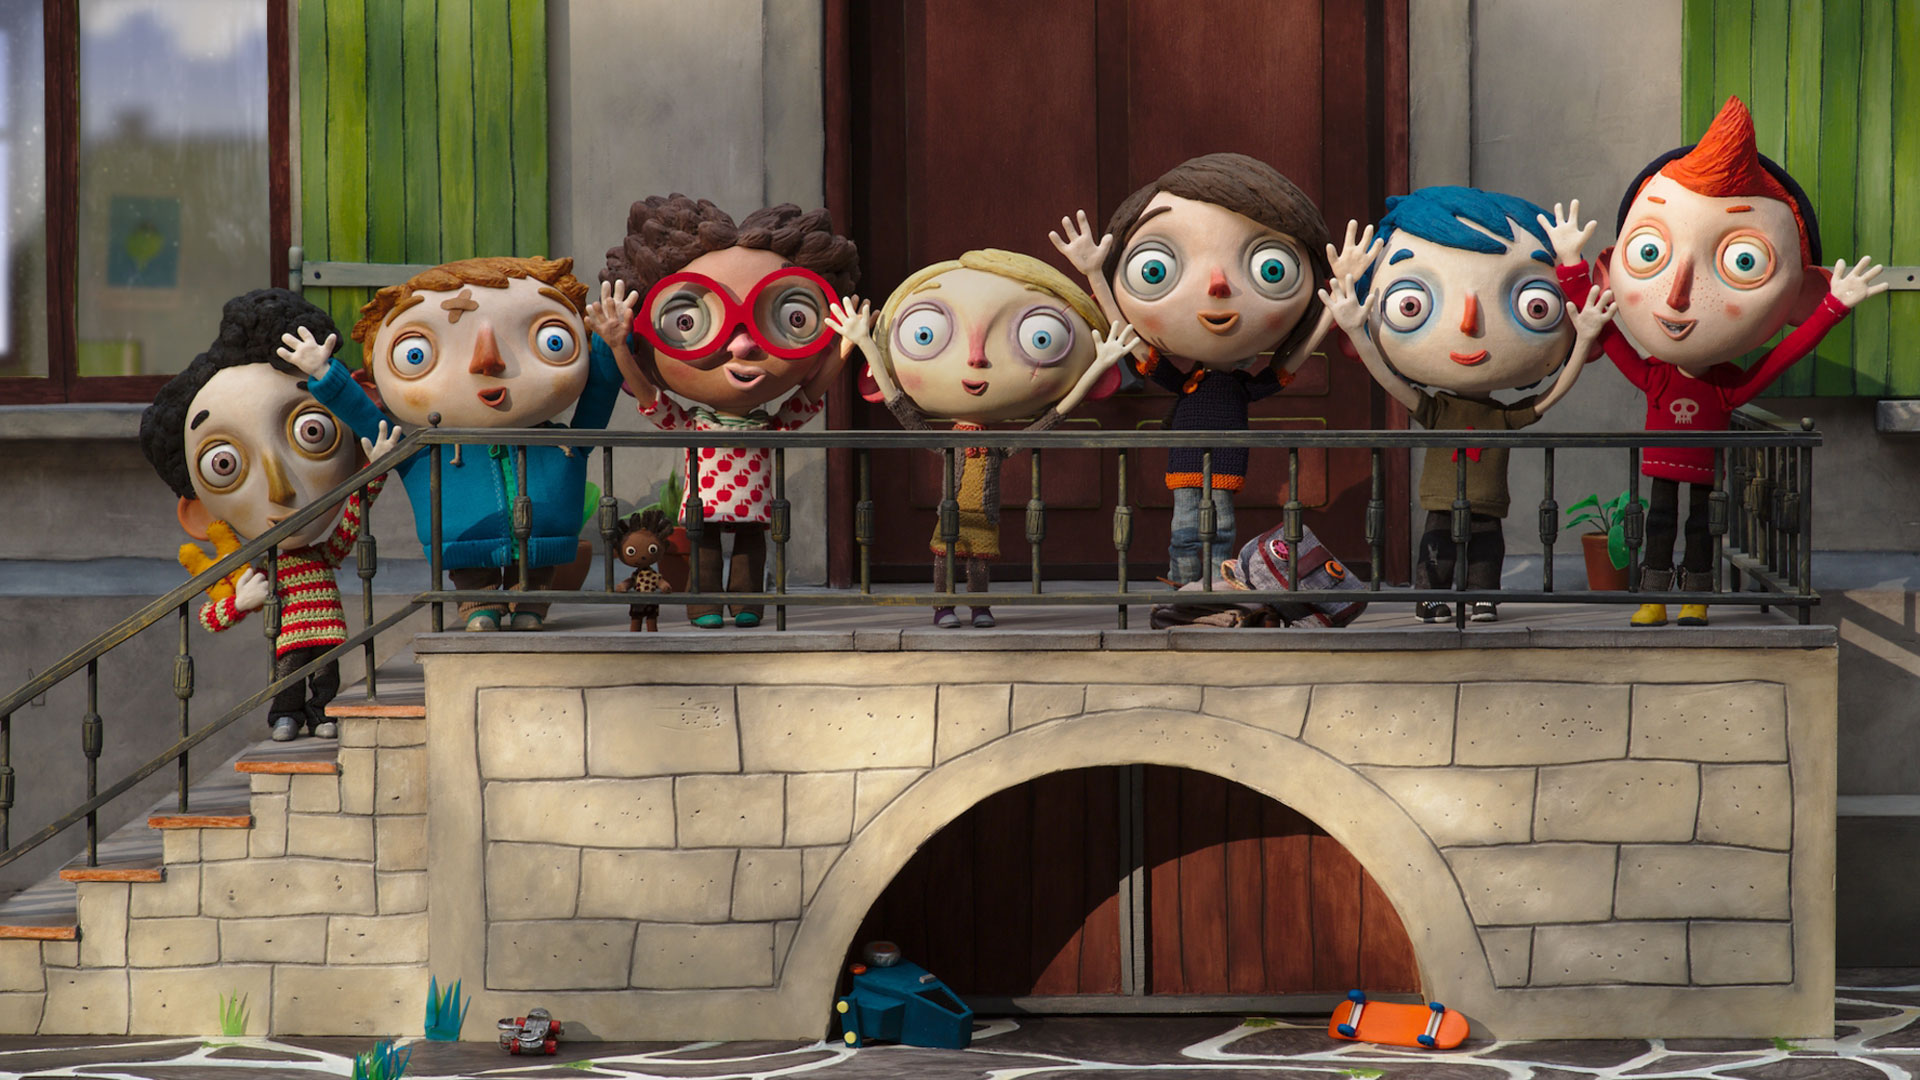 Filmstill aus dem Animationsfilm "Mein Leben als Zucchini": Sieben Kinder mit großen Köpfen und schmalen Körpern stehen an dem Geländer einer Steintreppe und reißen freudig die Arme in die Luft.